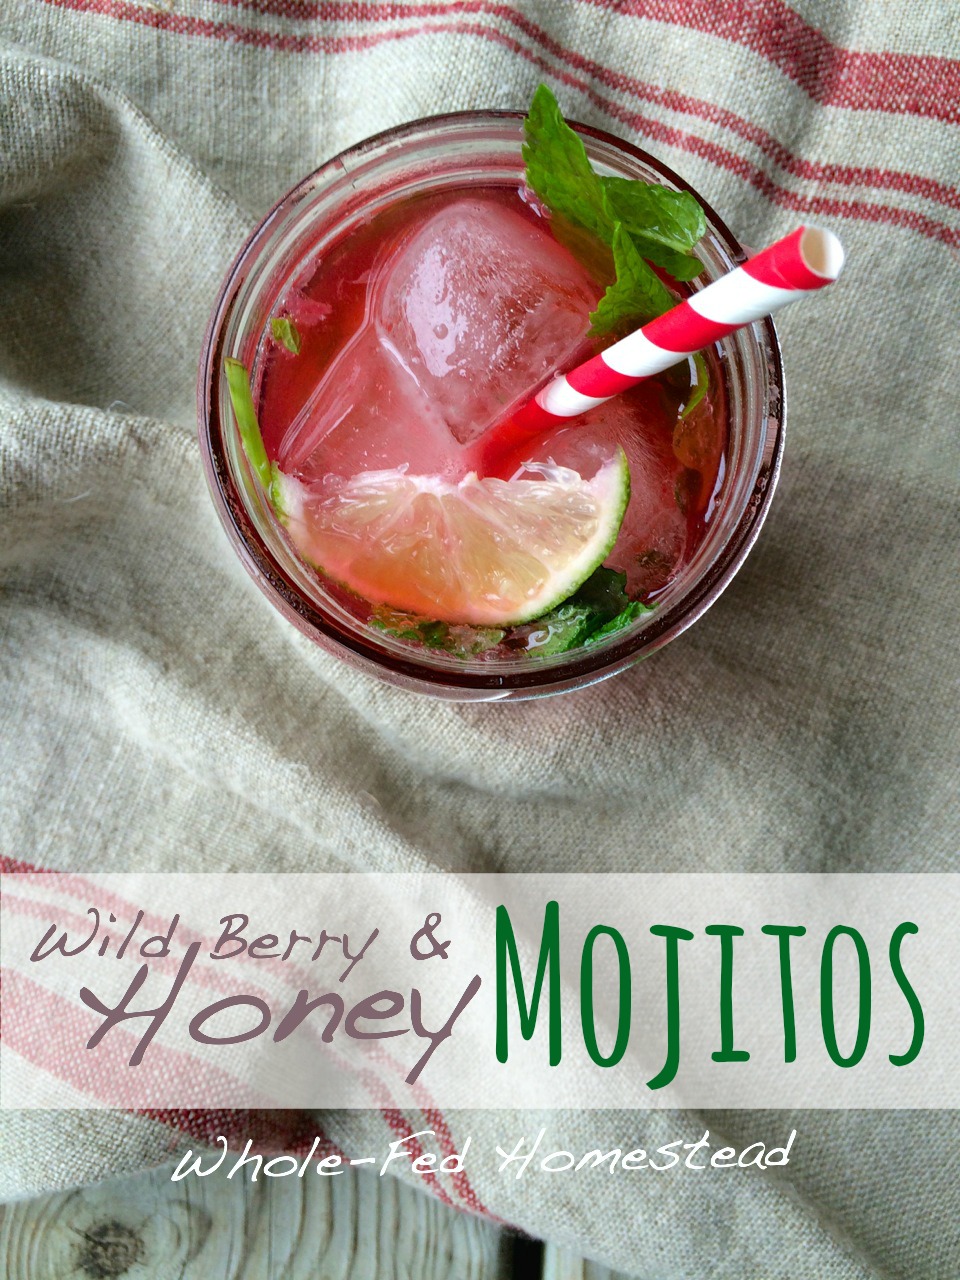 Wild Berry & Honey Mojitos